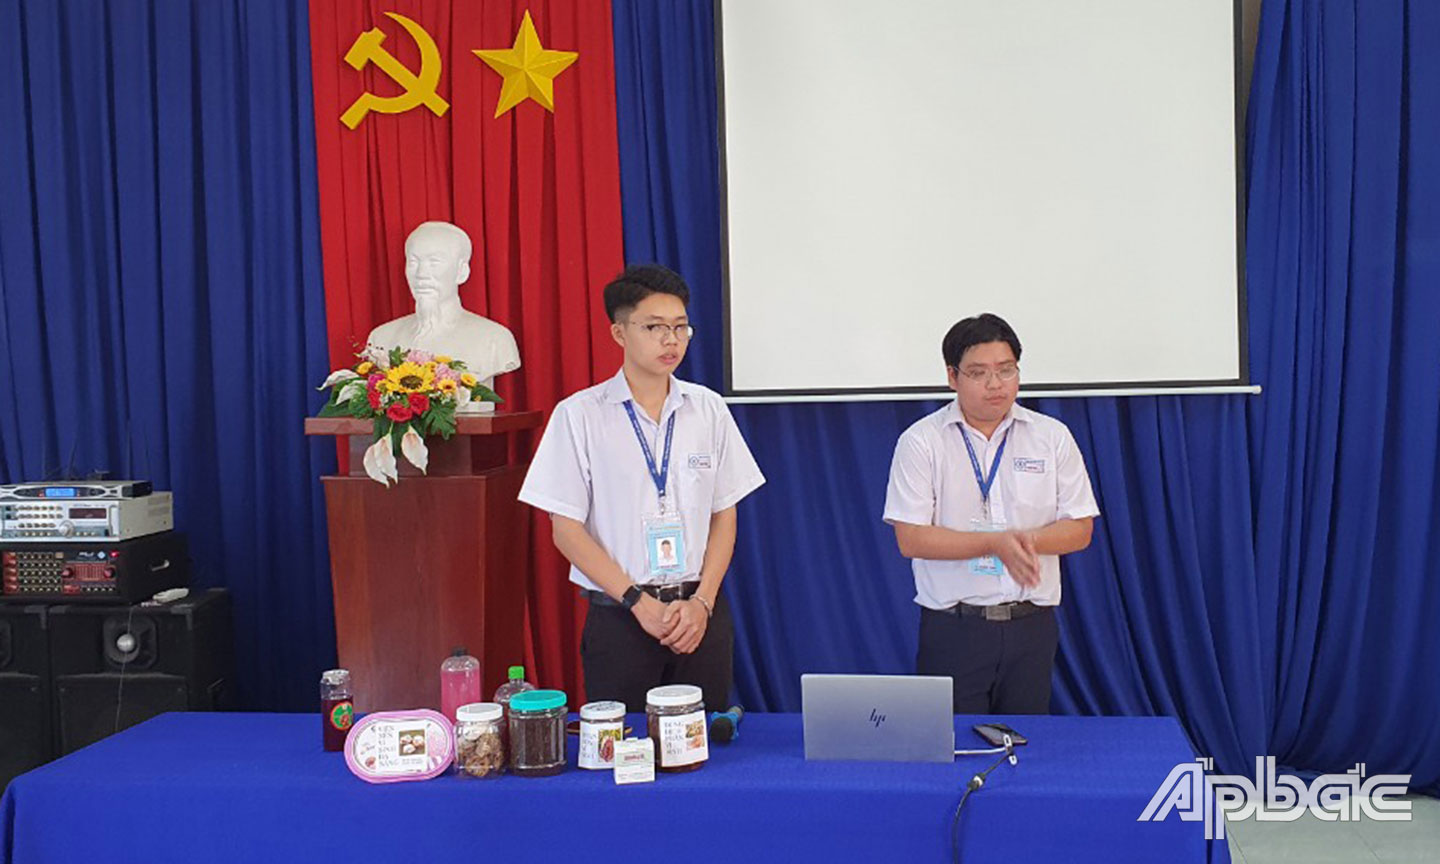  Đề tài Ứng dụng công nghệ IMO vào sản xuất phân bón từ rác thải hữu cơ và phế phẩm trong nông nghiệp của nhóm học sinh Trường THPT Chuyên Tiền Giang. 